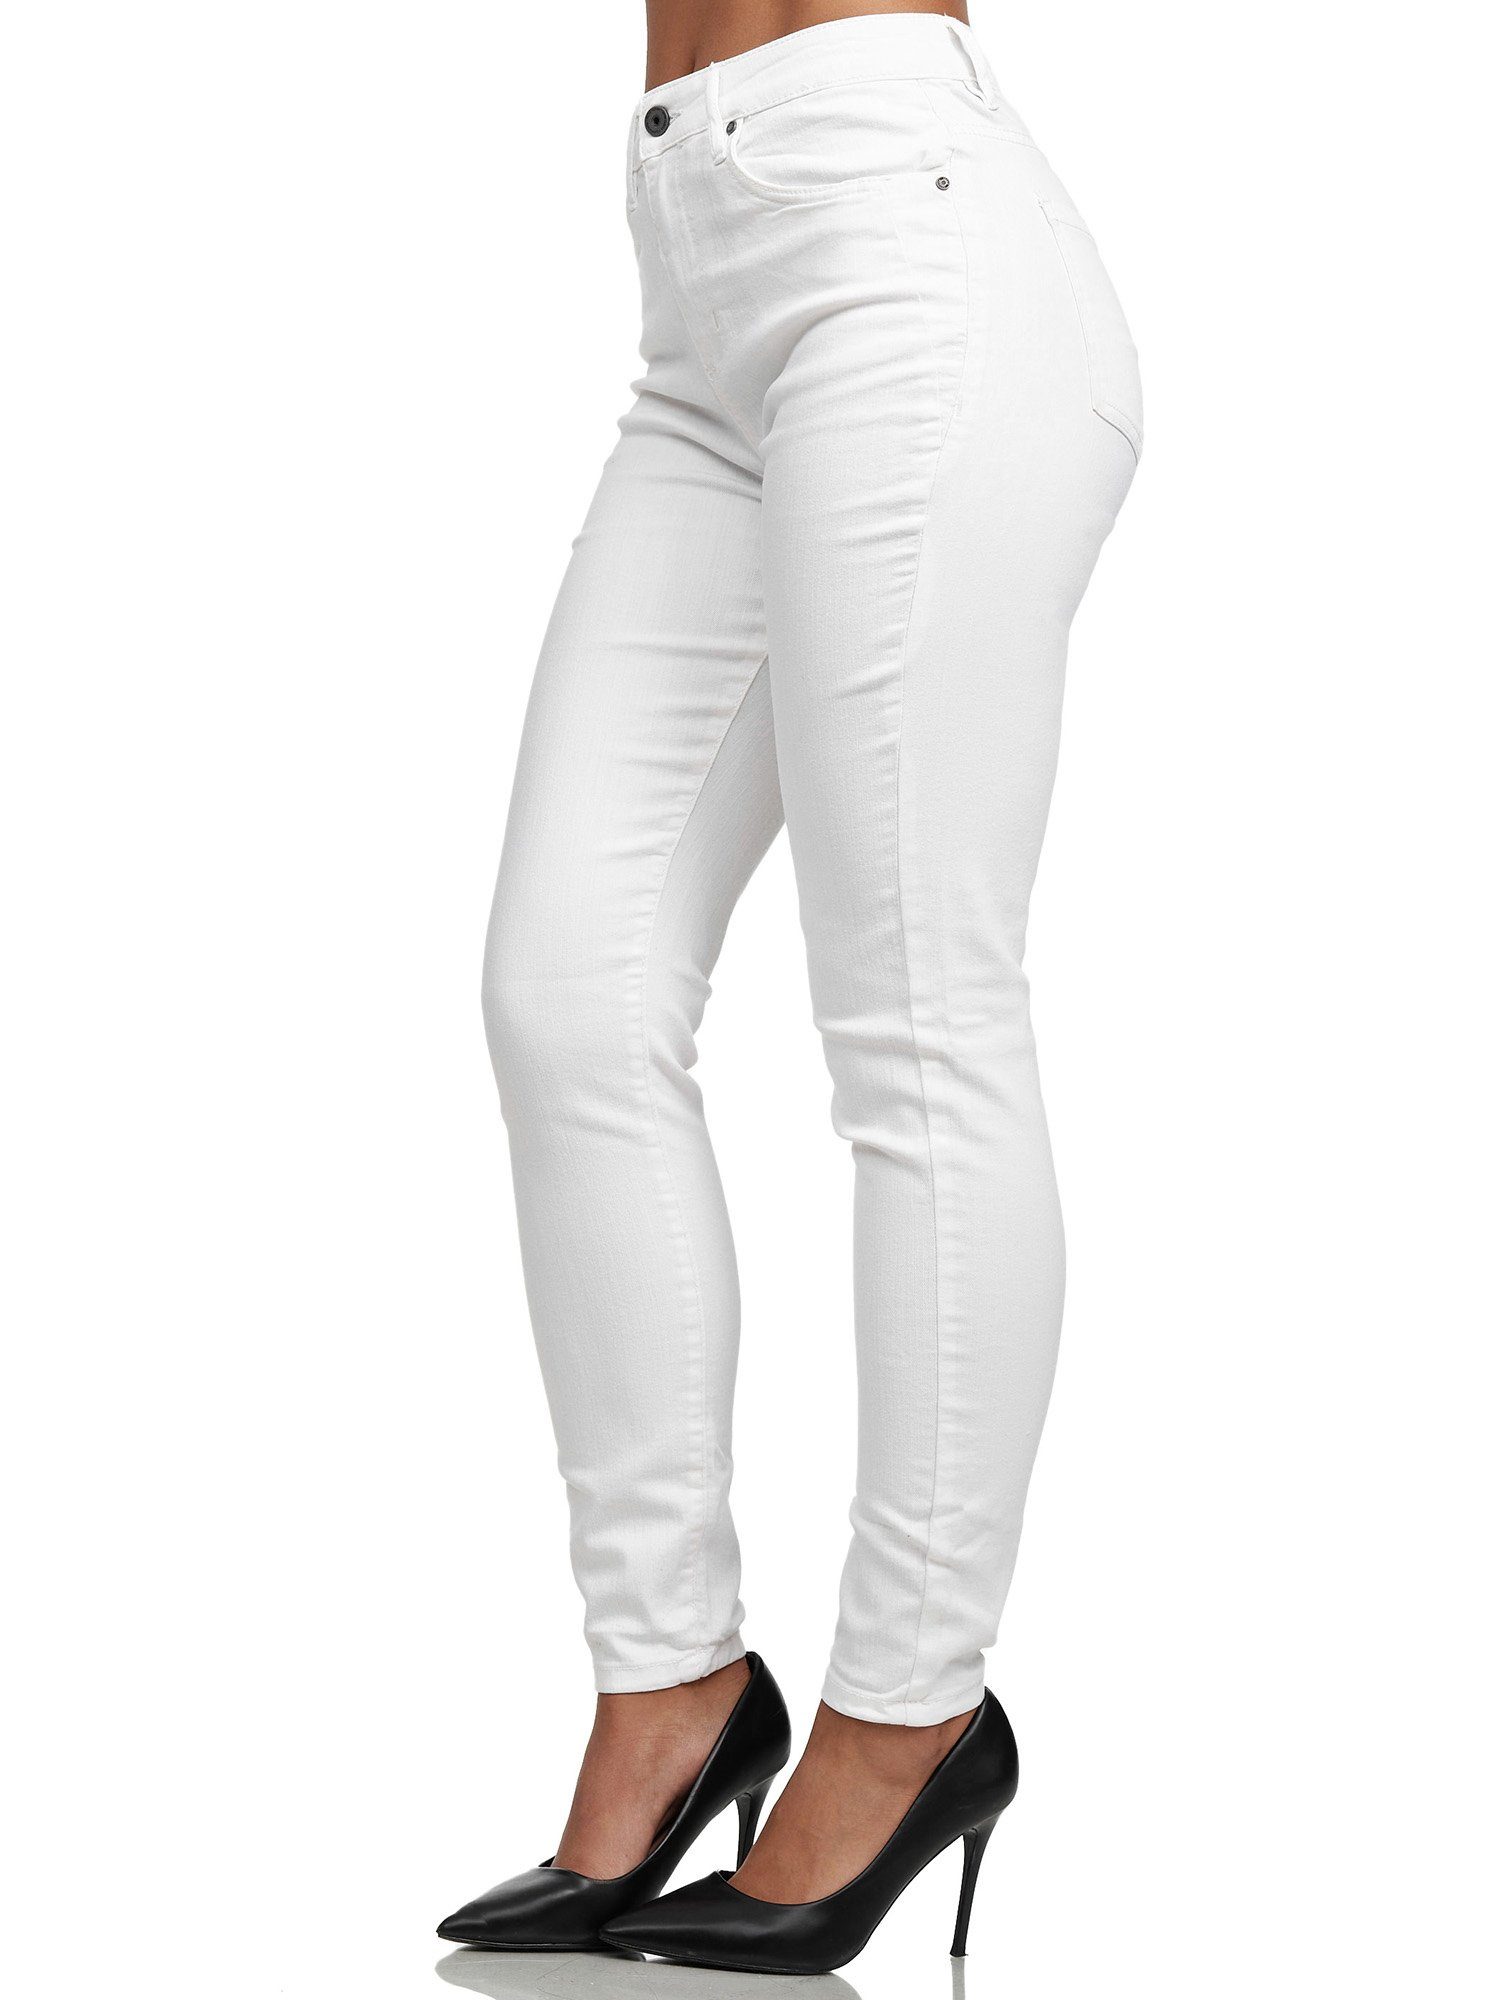 Weiße High Waist Jeans für Damen online kaufen | OTTO